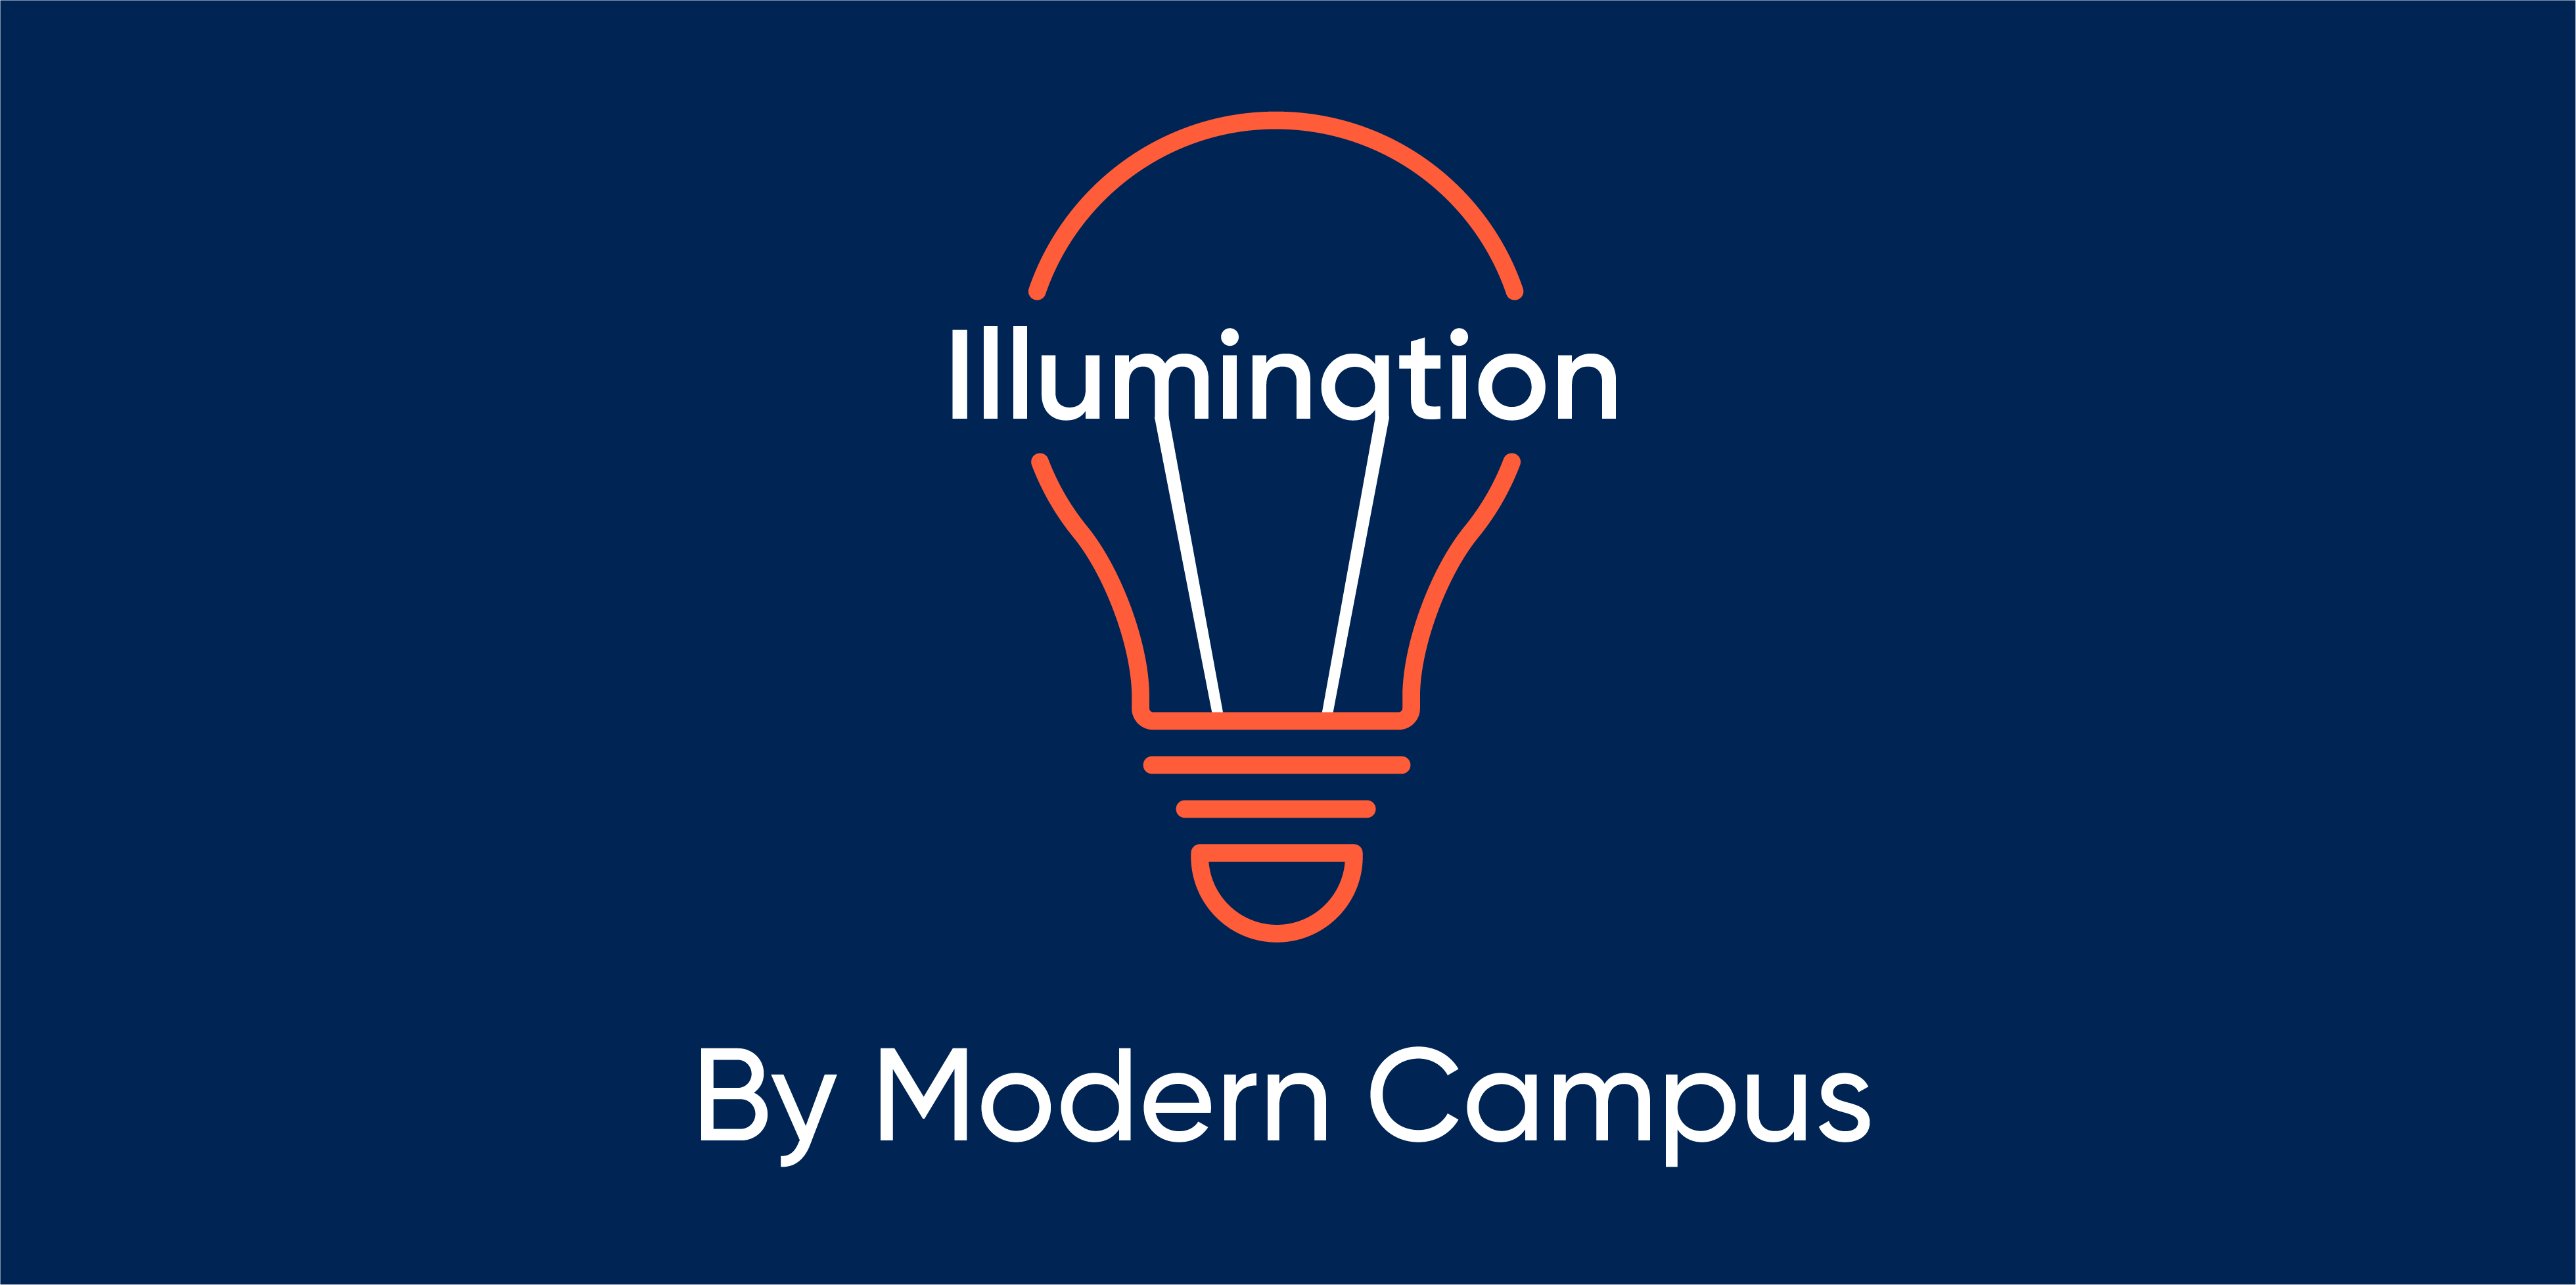 Episode 94: Illumination by Modern Campus